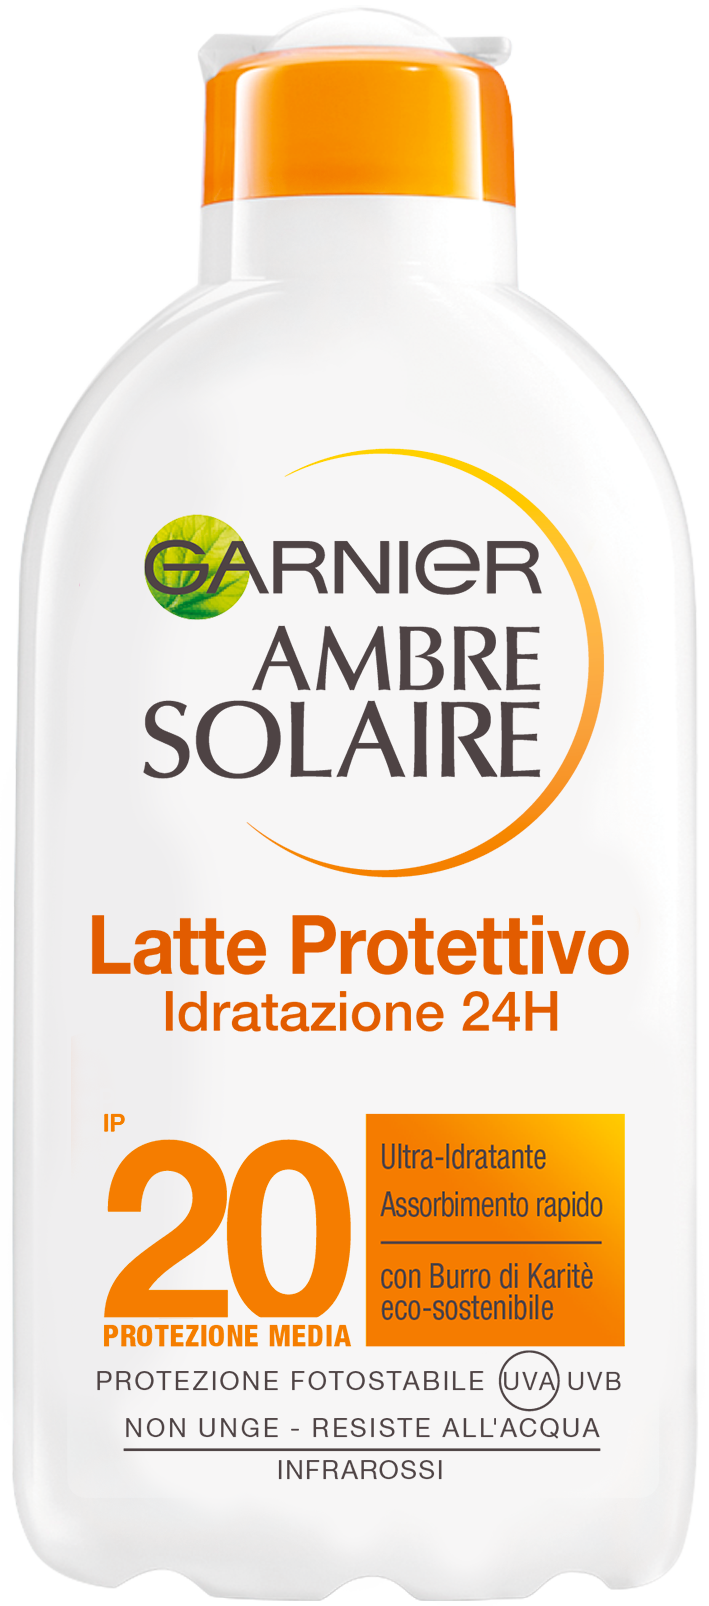 Ambre Solaire Latte Protettivo IP 20 Garnier 200ml